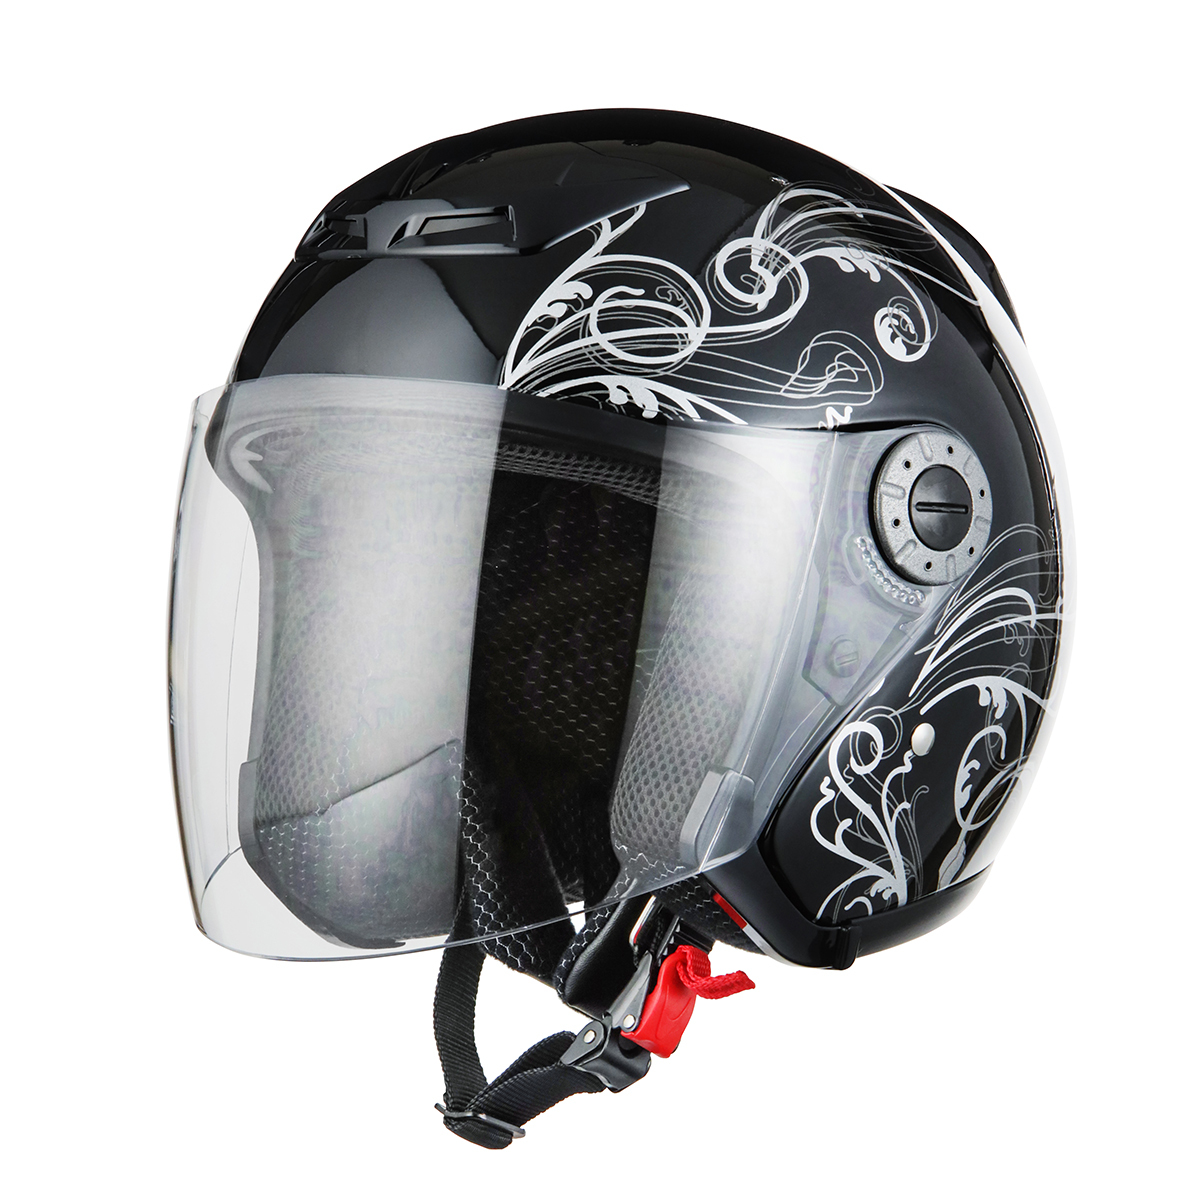 ヘルメット ジェット グラフィック ブラック サイズL SG規格 PSCマーク取得 バイクパーツセンター_画像1